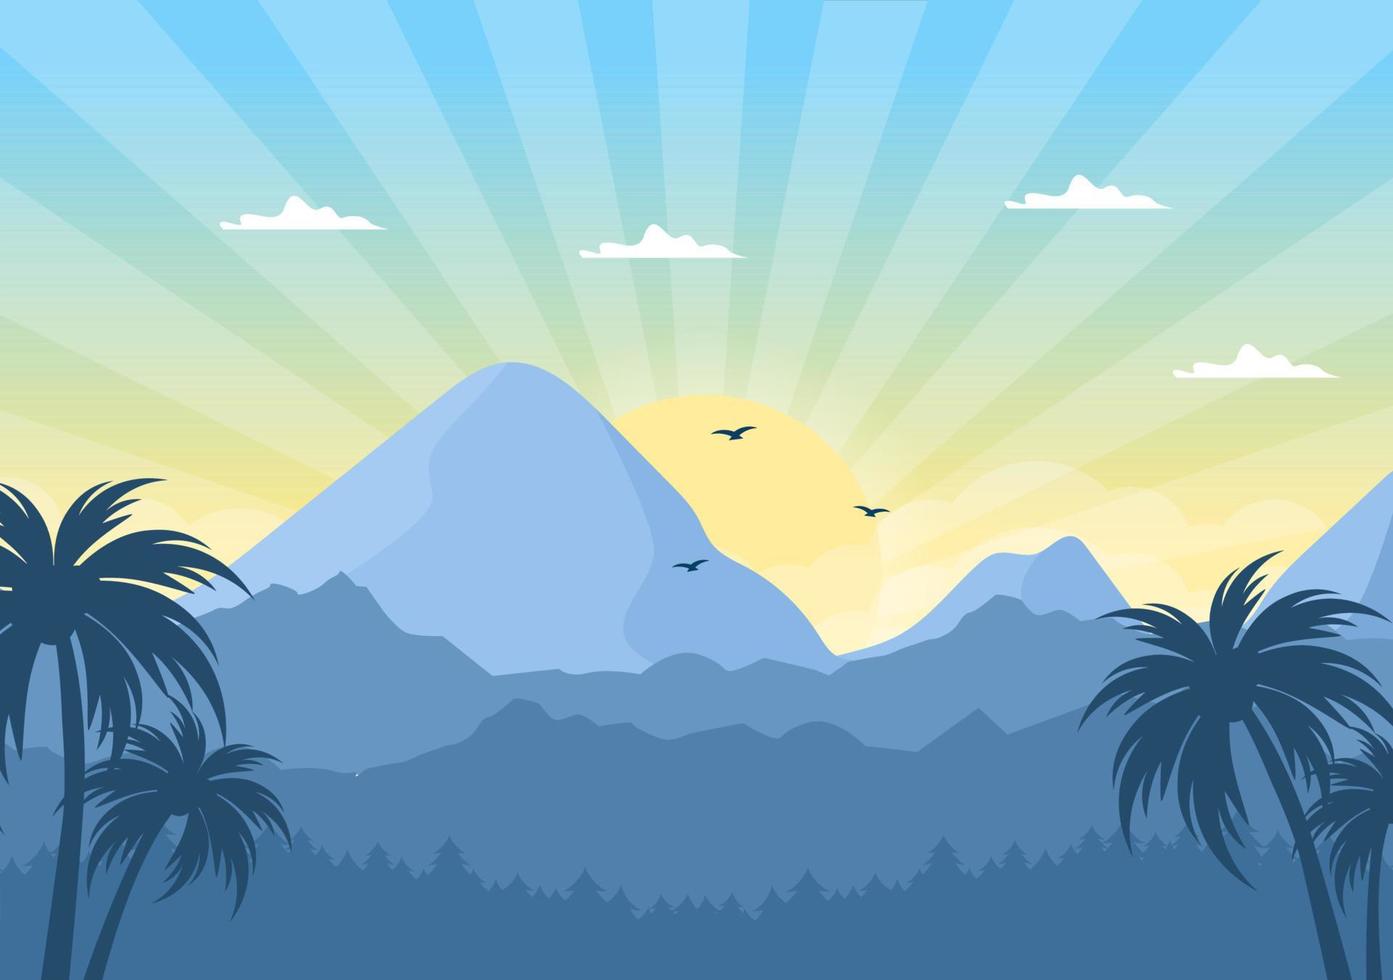 Sonnenaufgangslandschaft der Morgenszene Berge, Hügel, See und Tal in flacher Natur für Poster, Banner oder Hintergrundillustration vektor